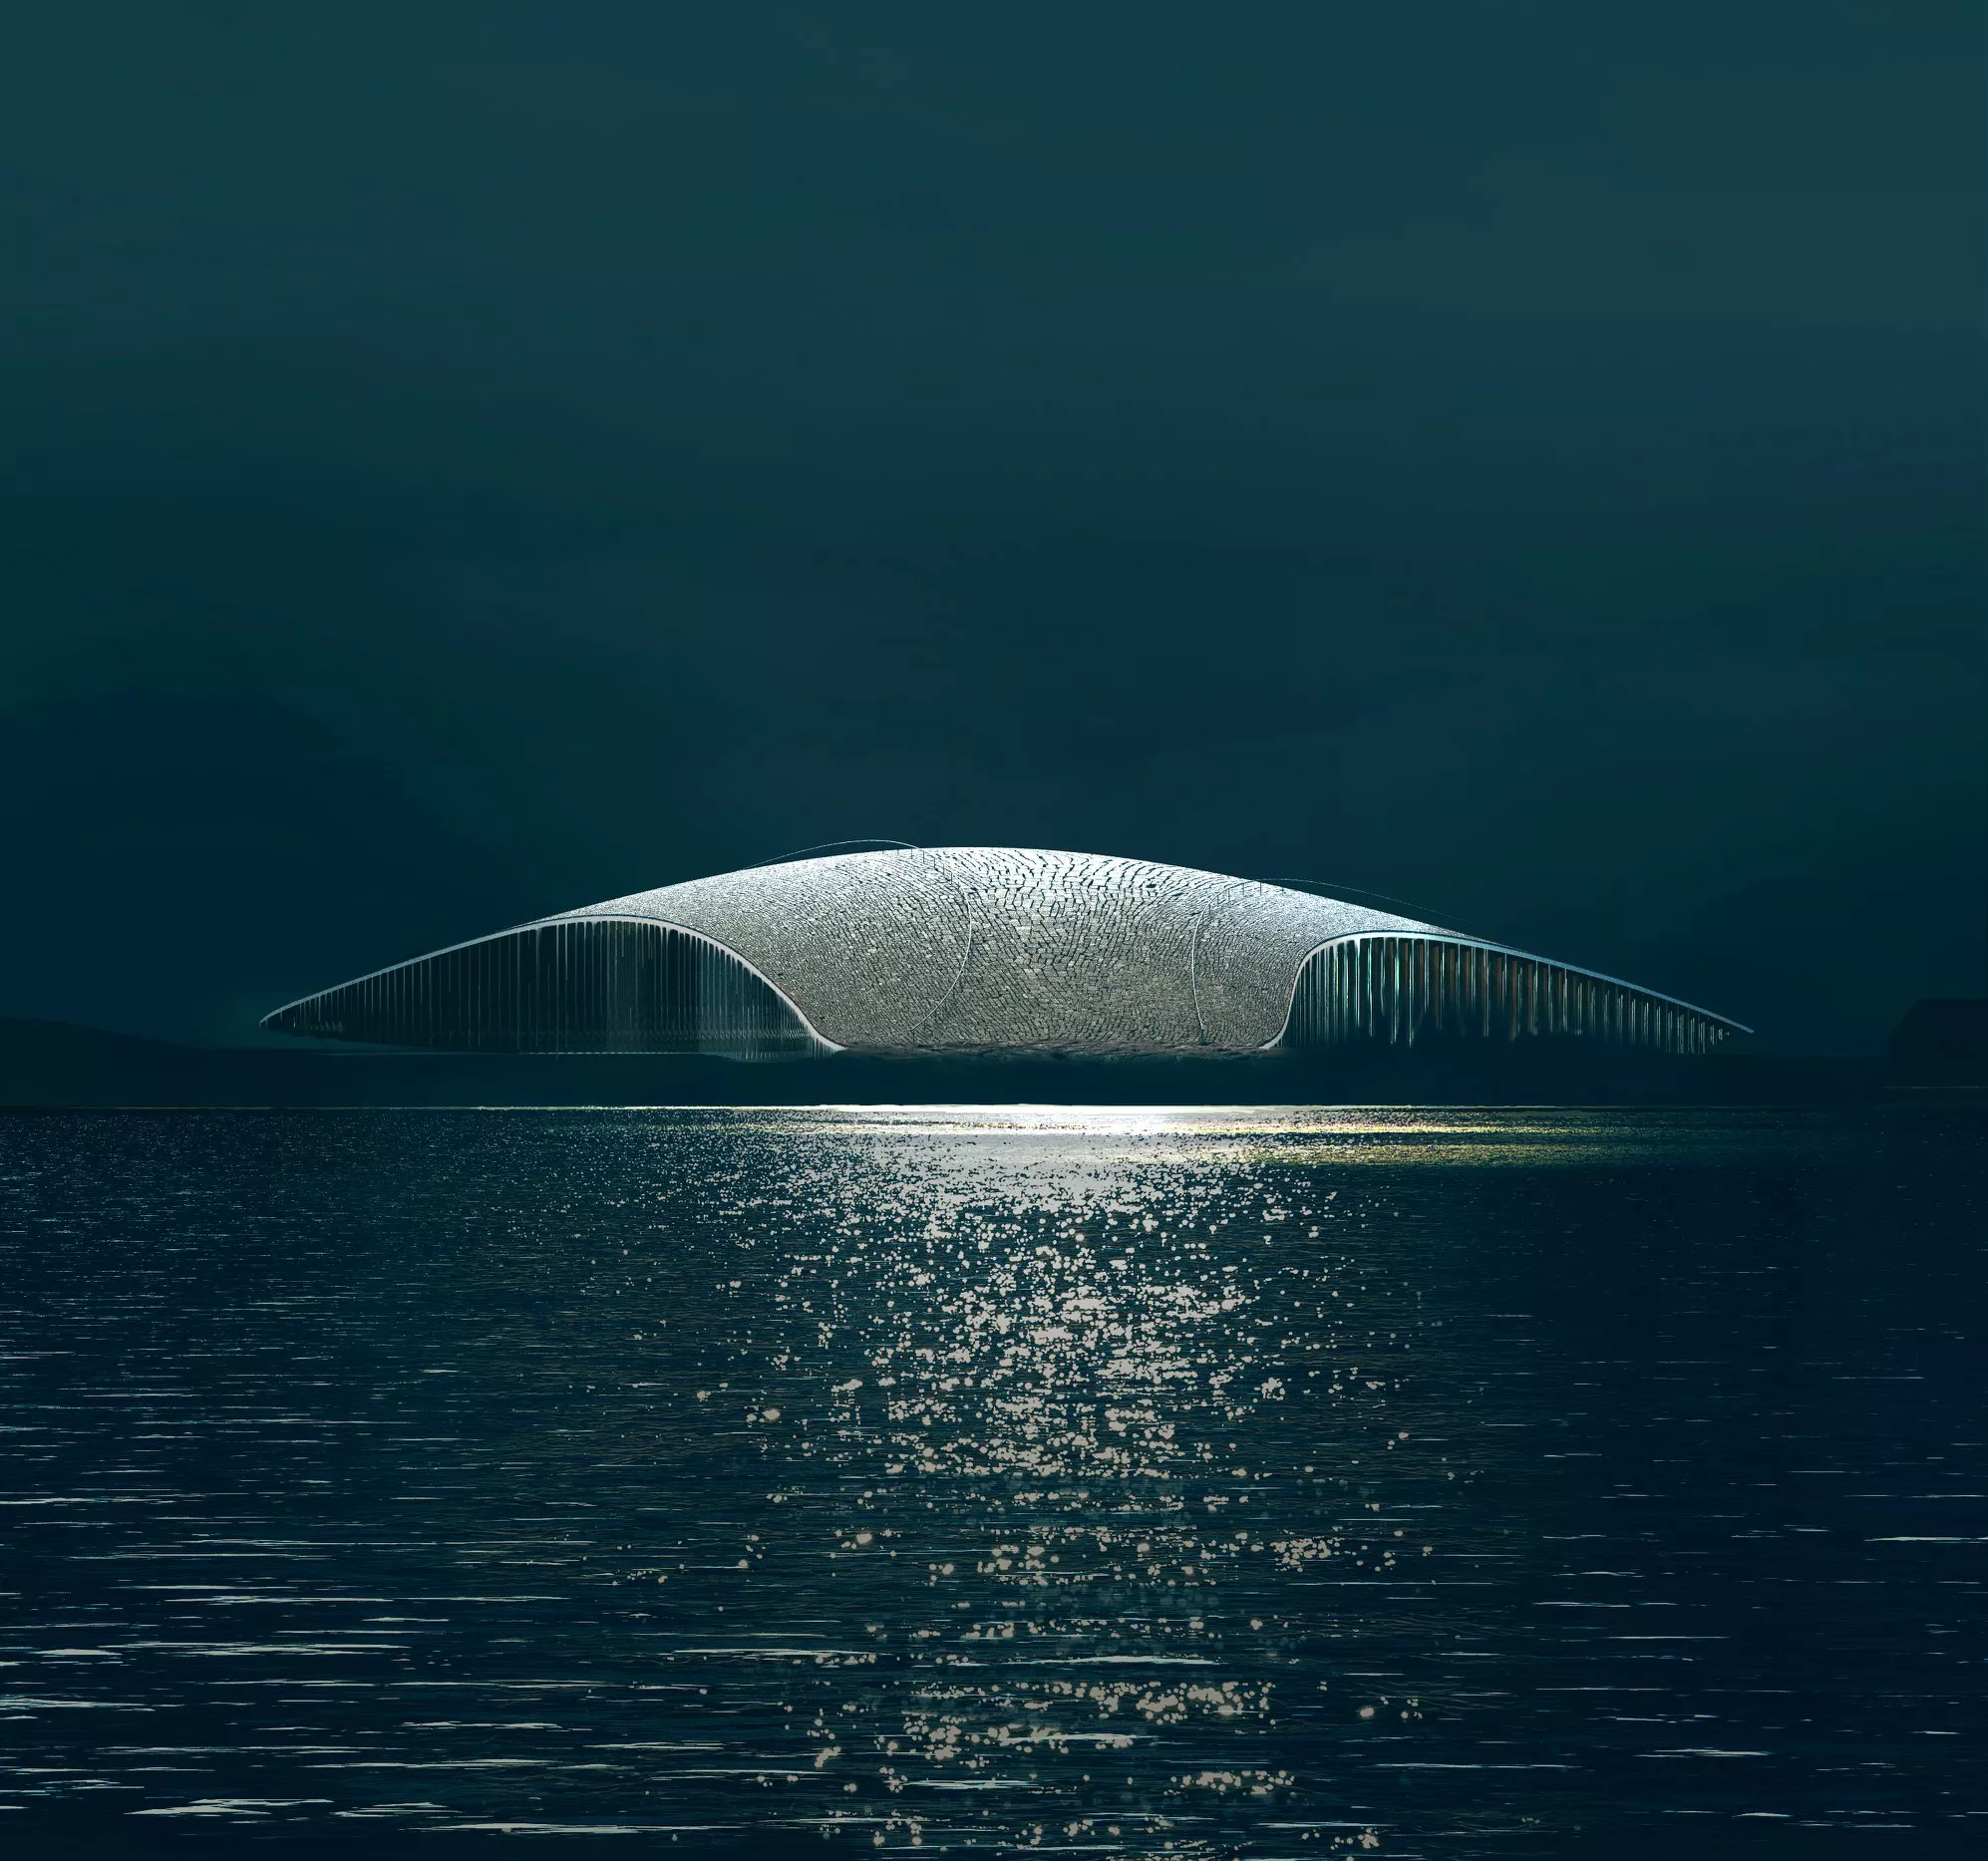 The Whale, apre in Norvegia l’edificio a forma di balena da cui osservare i cetacei